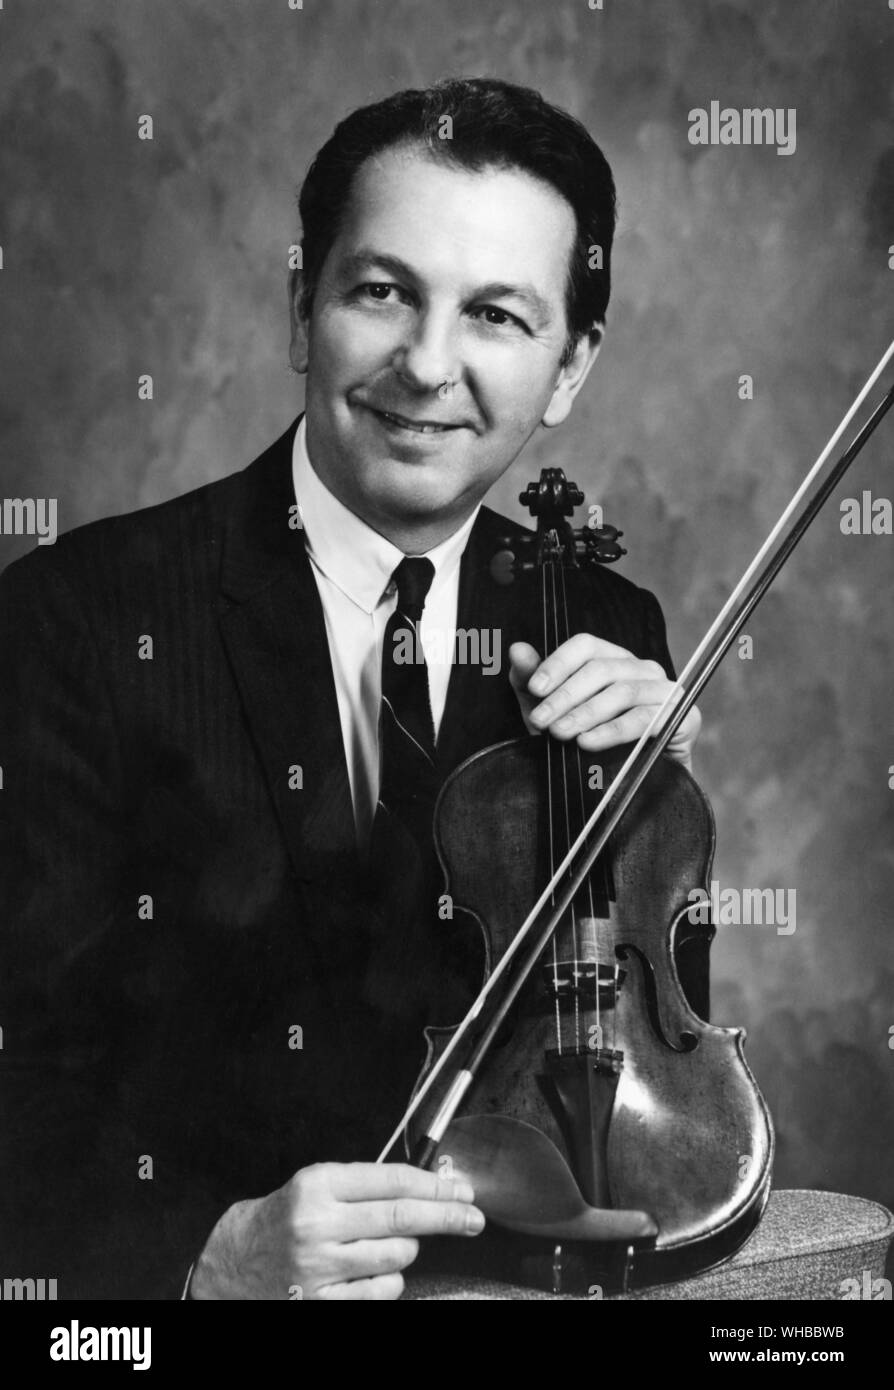 Alfio Micci - violinist. Stock Photo